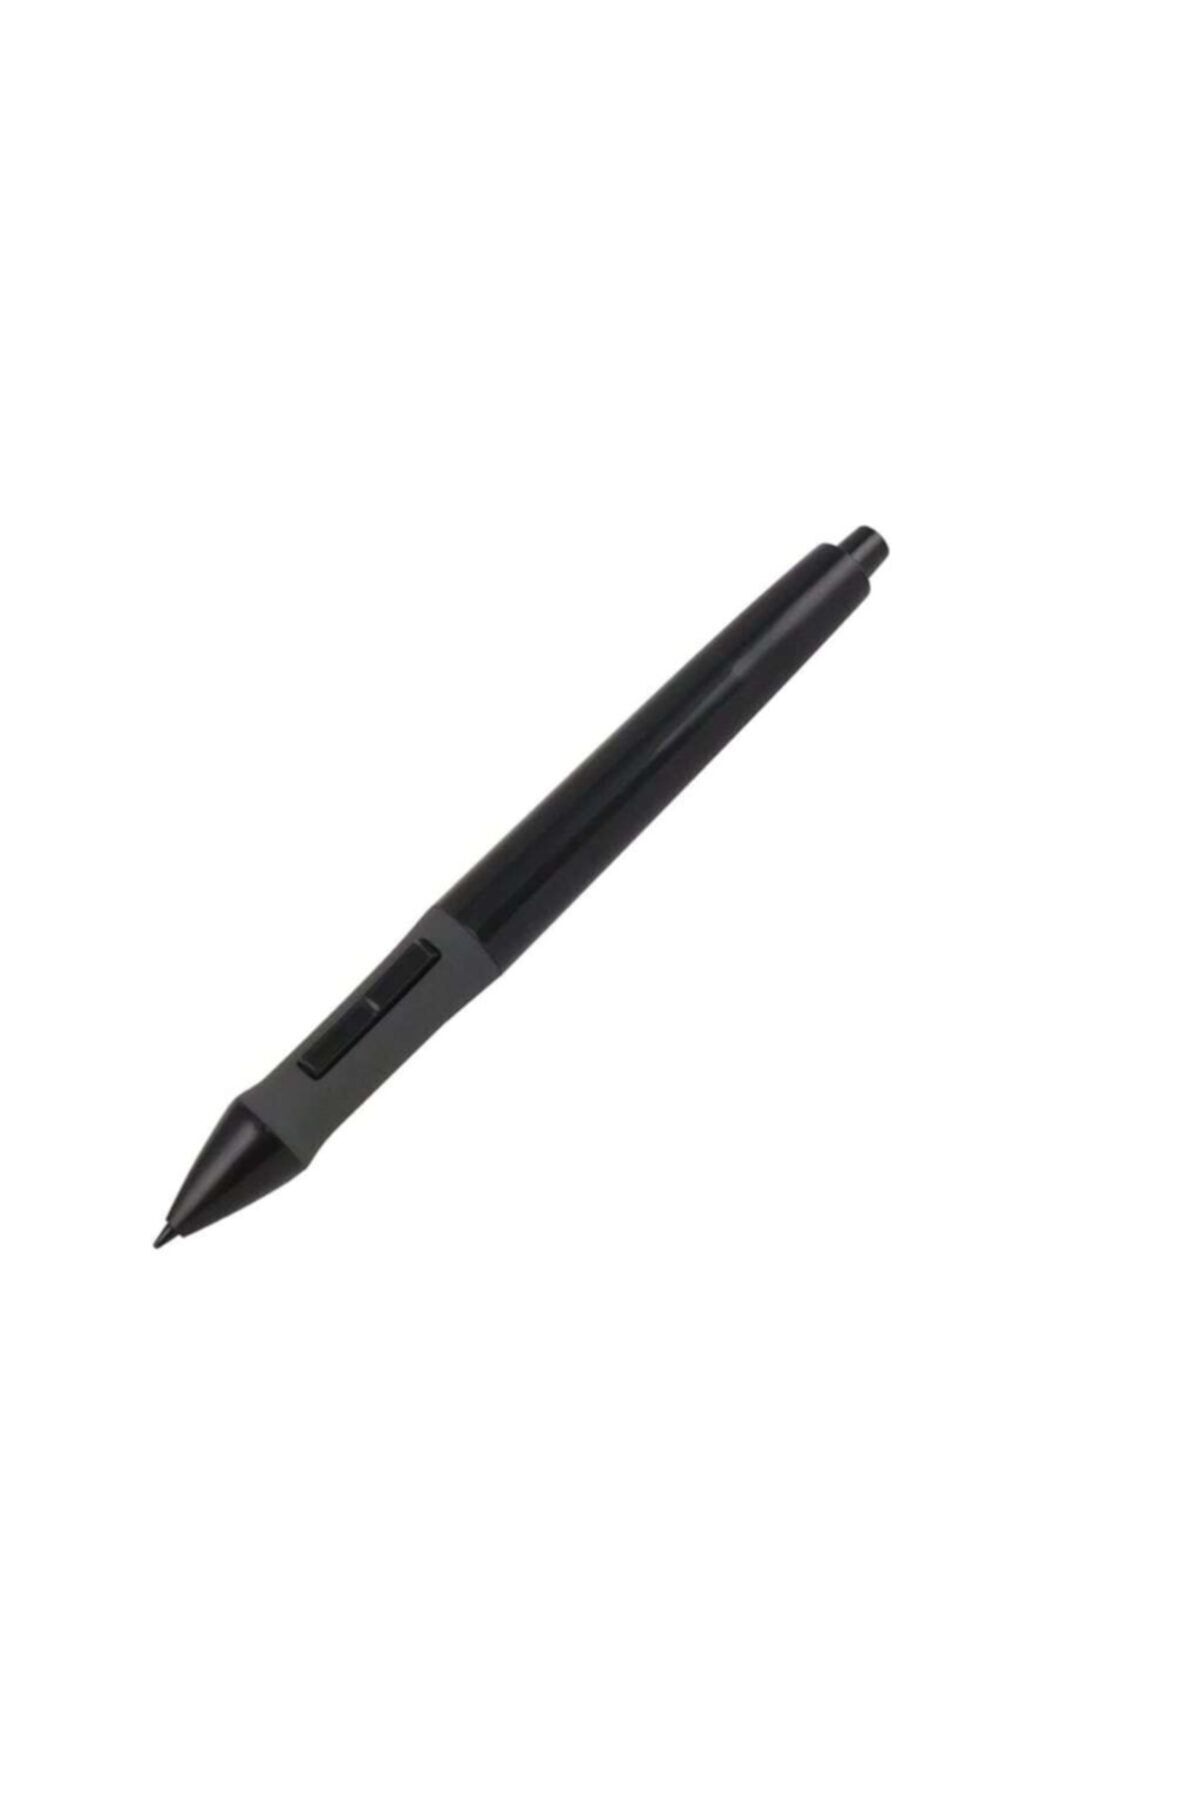 Huion 420 Ugee M708 Grafik Tablet Için Yedek Kalem Siyah Ve Beyaz